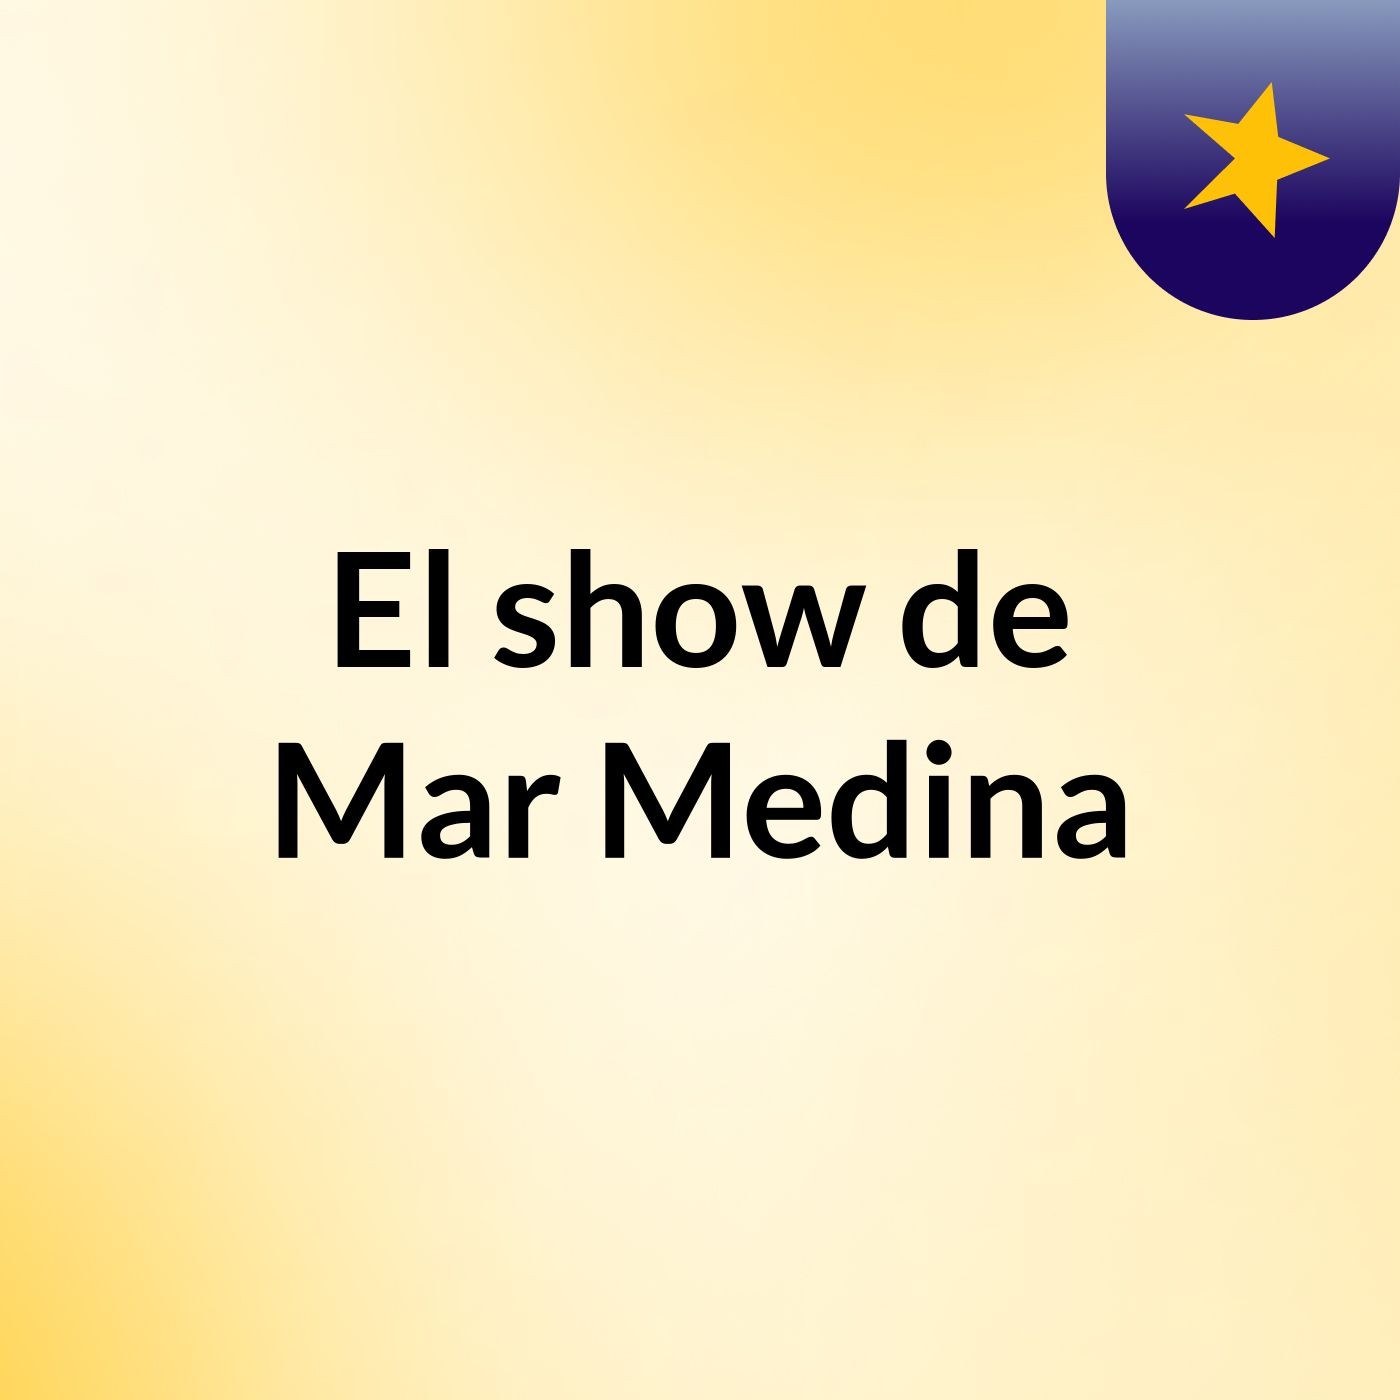 El show de Mar Medina